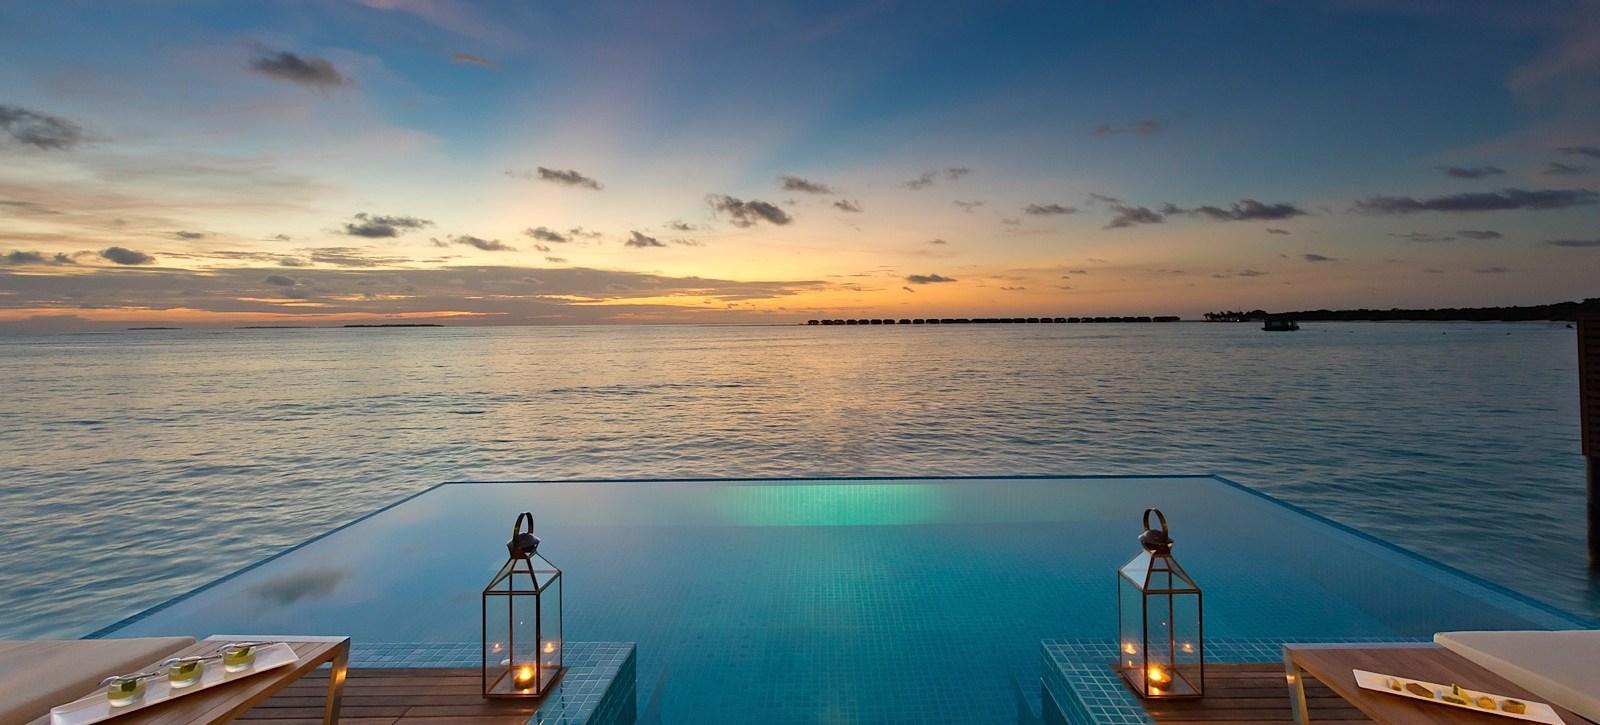 2月下旬去马尔代夫度蜜月,选哪个岛好?